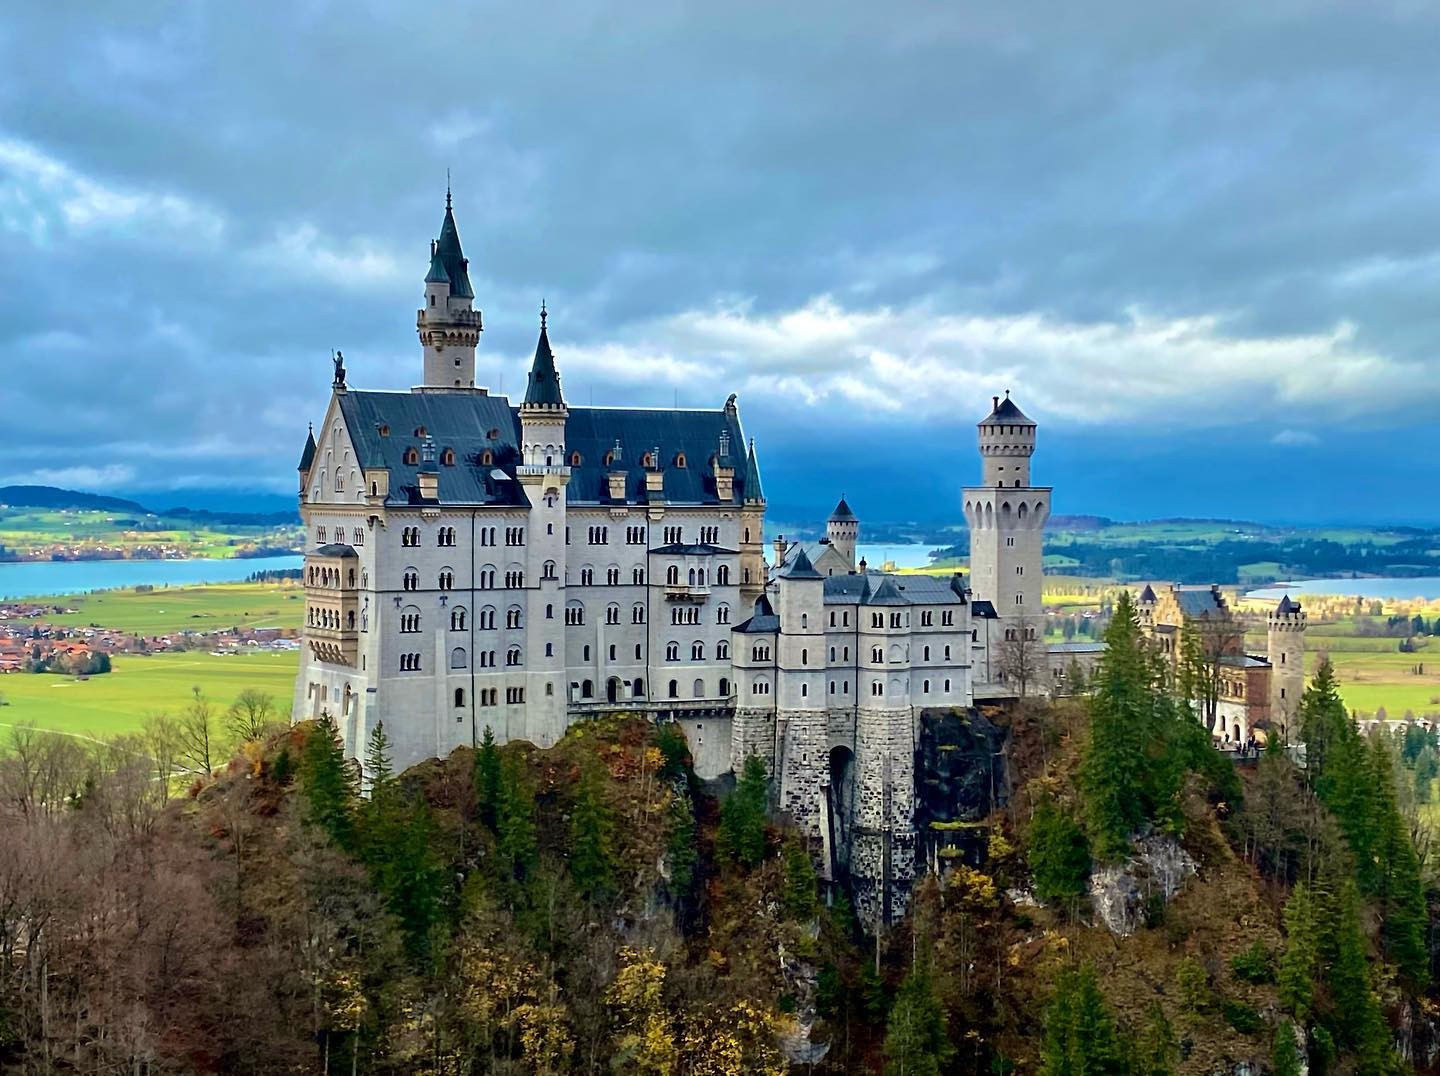 Castle Neuschwanstein — Germany